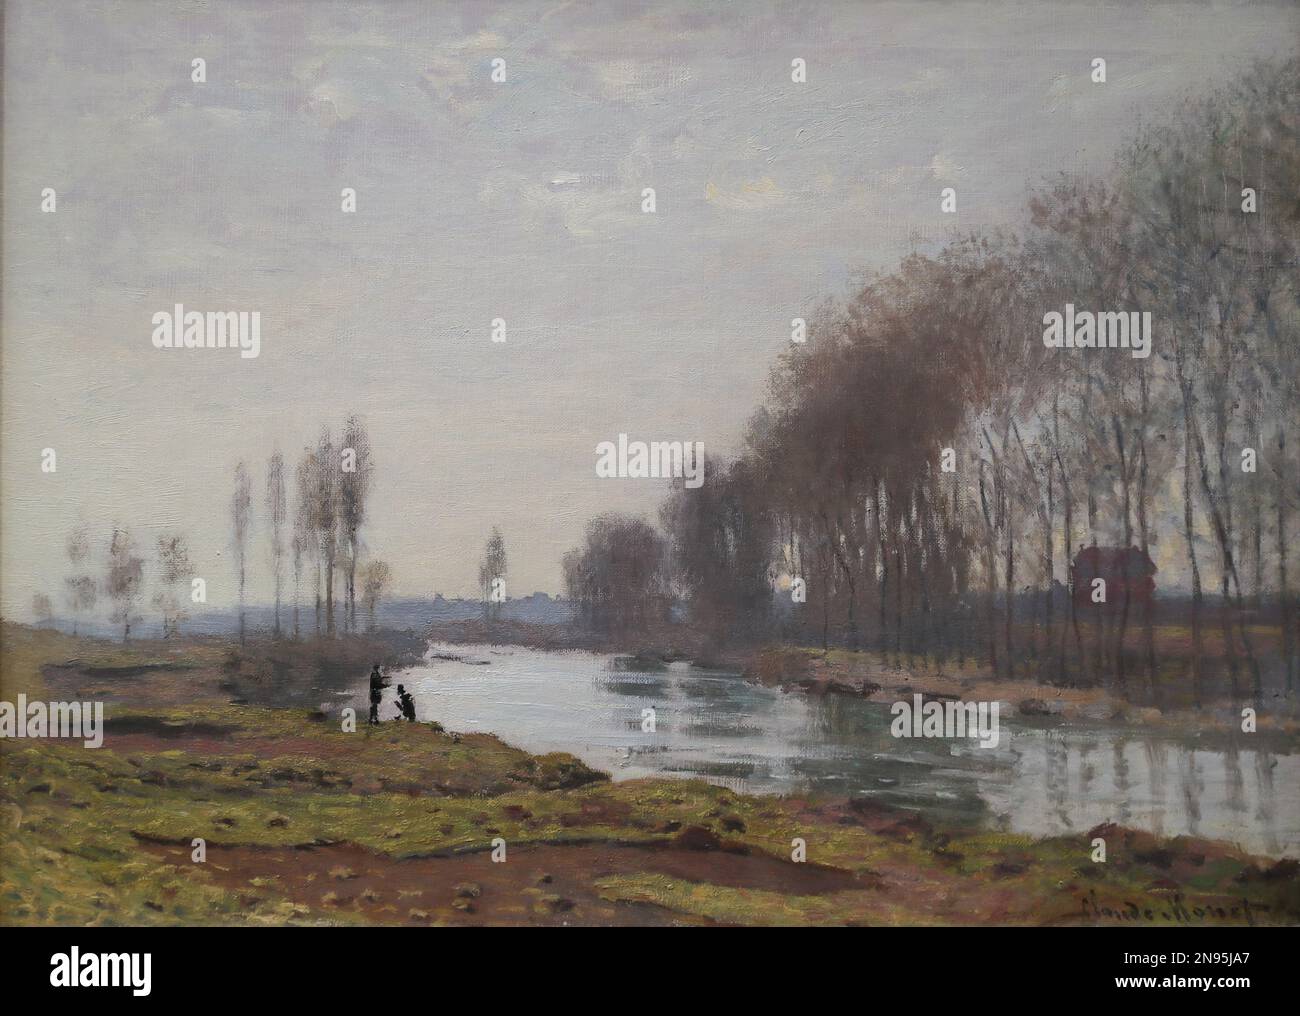 Le petit bras de Seine à Argenteuil par le peintre impressionniste français Claude Monet à la Galerie nationale, Londres, Royaume-Uni Banque D'Images